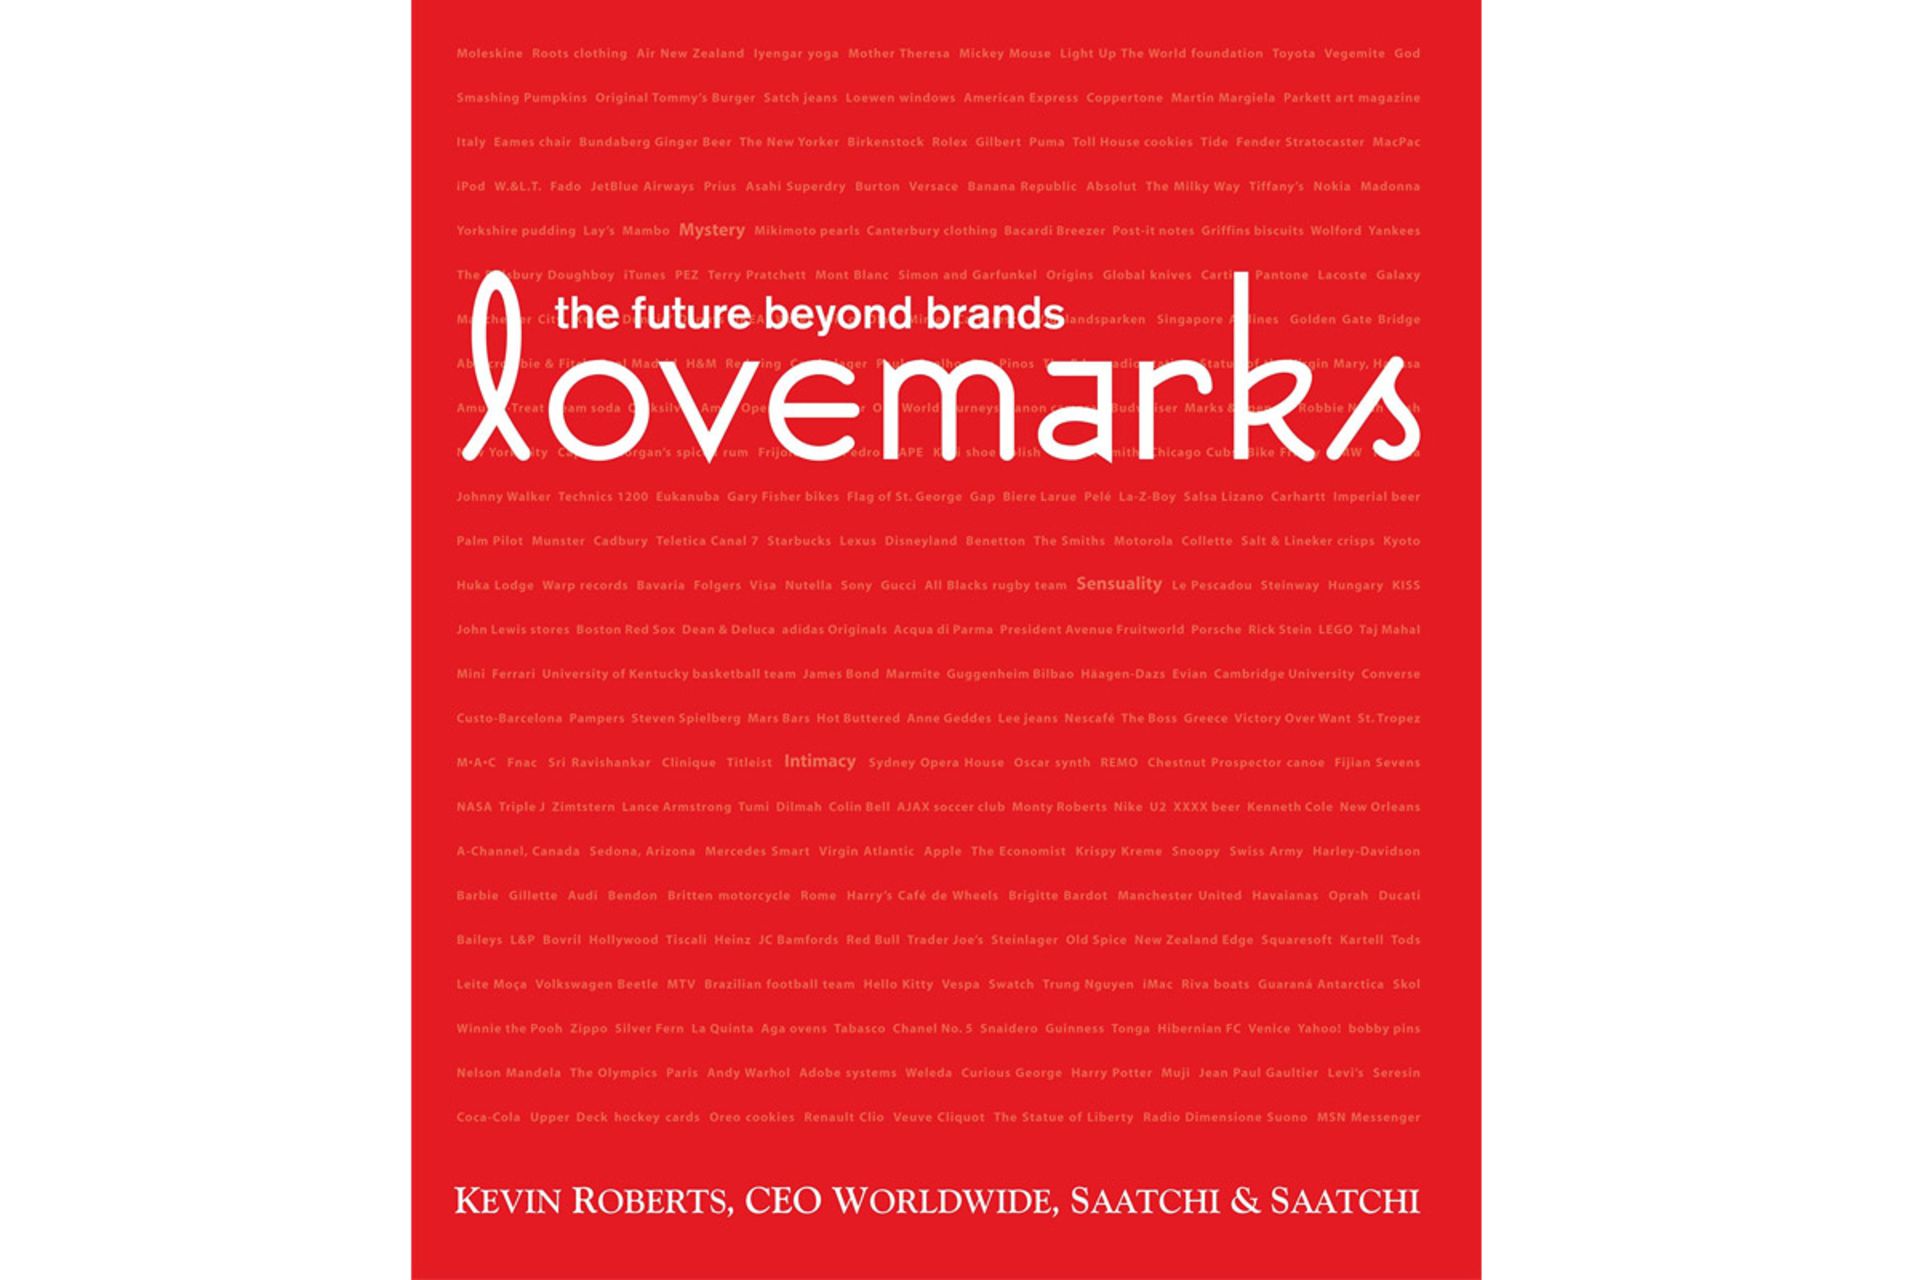 مرجع متخصصين ايران جزوه رايگان برند محبوب روبرتز كوين/lovemarks kevin